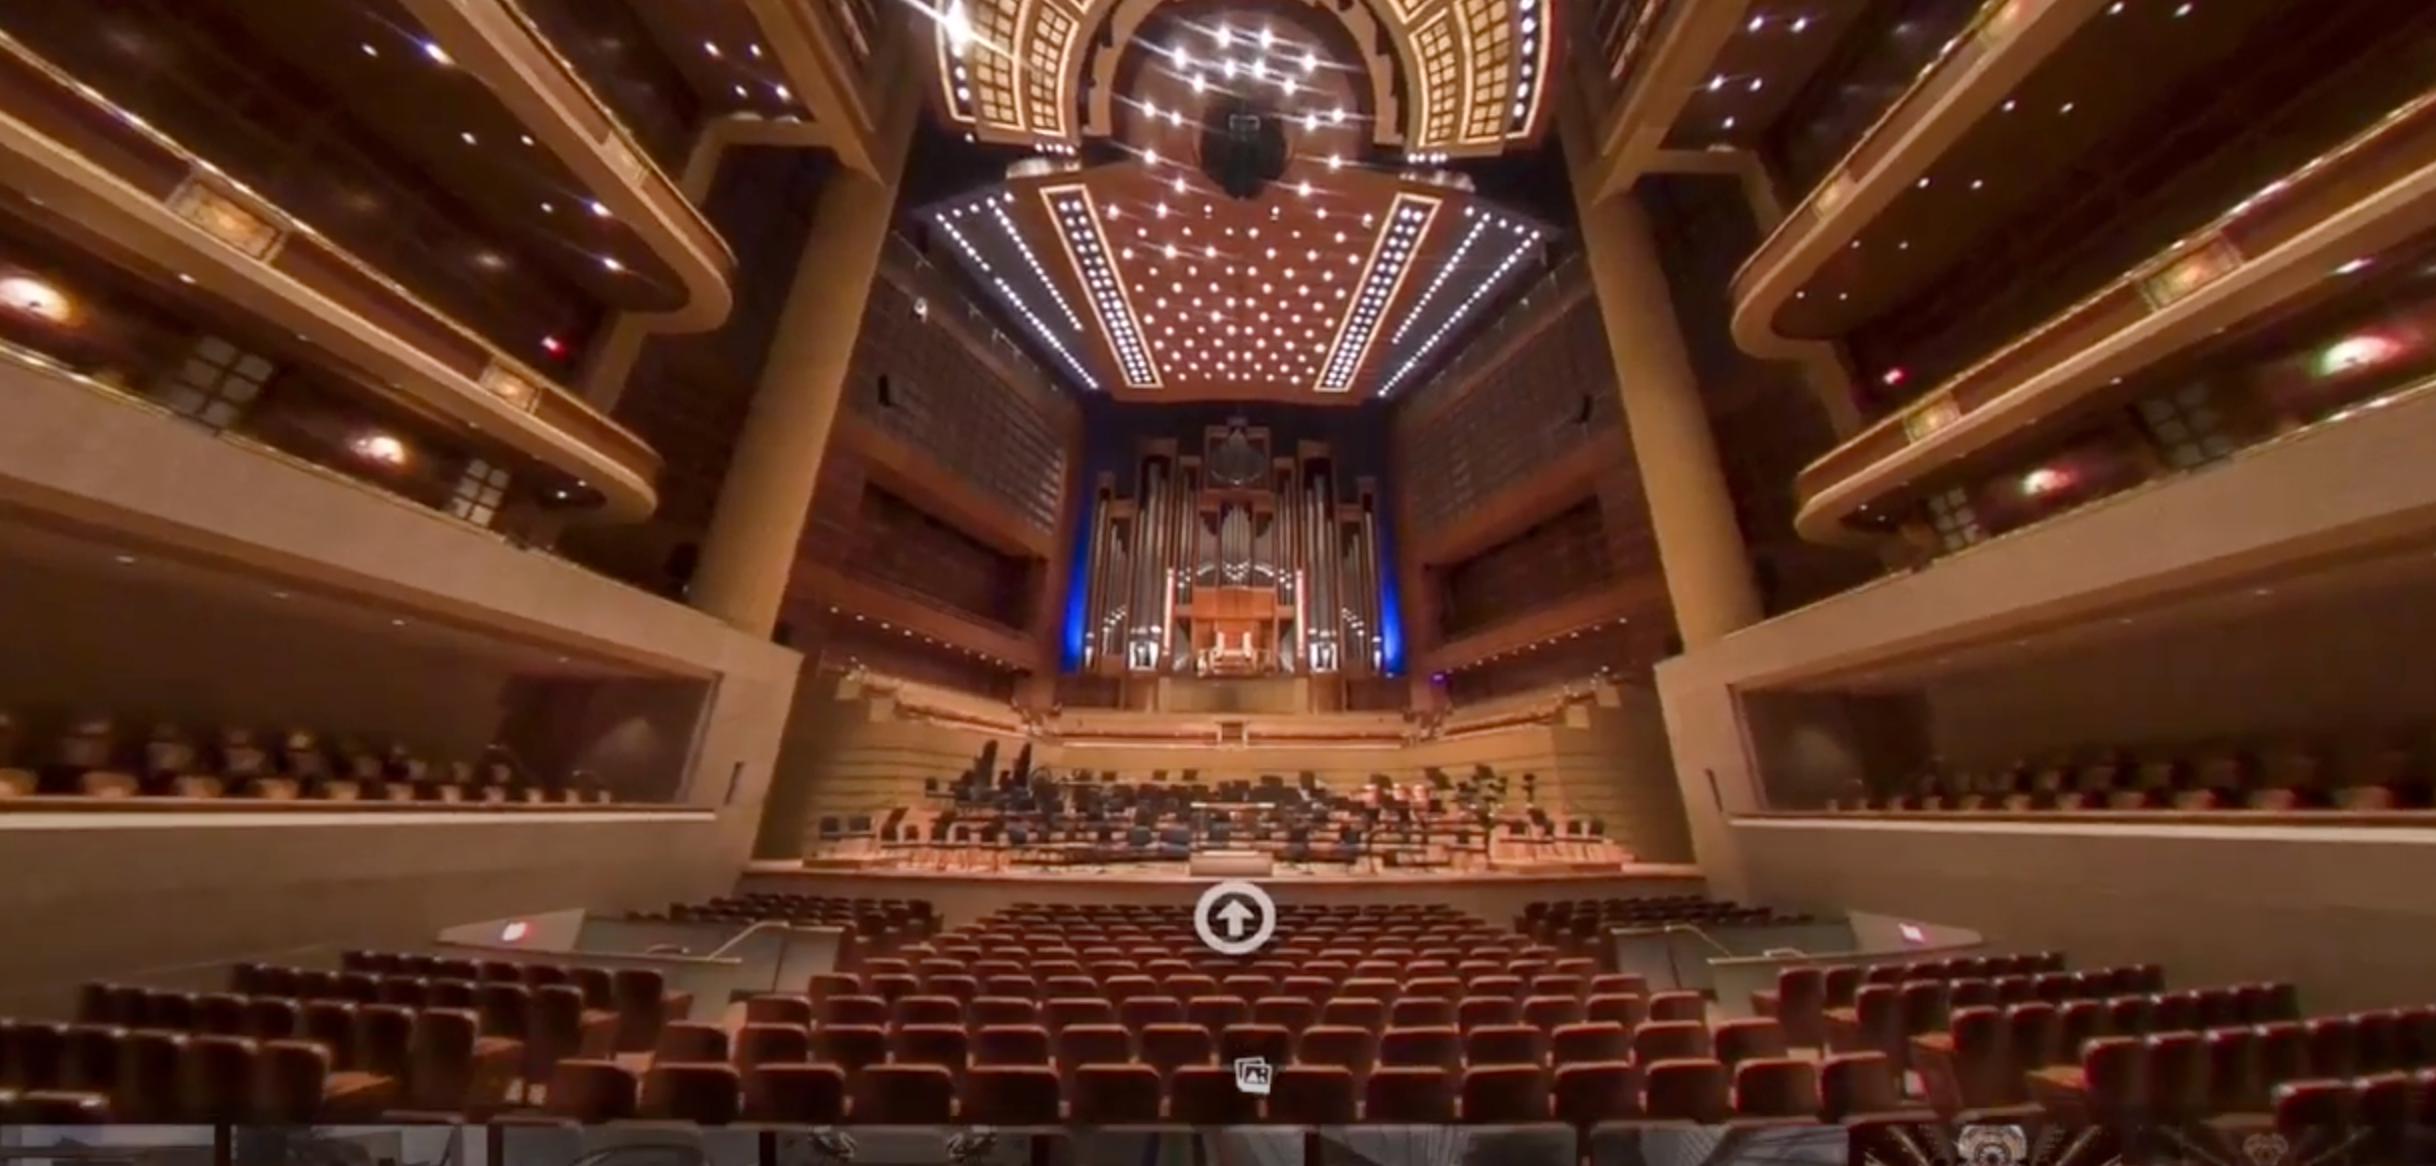 Take a virtual tour of the Morton H. Meyerson Symphony Center